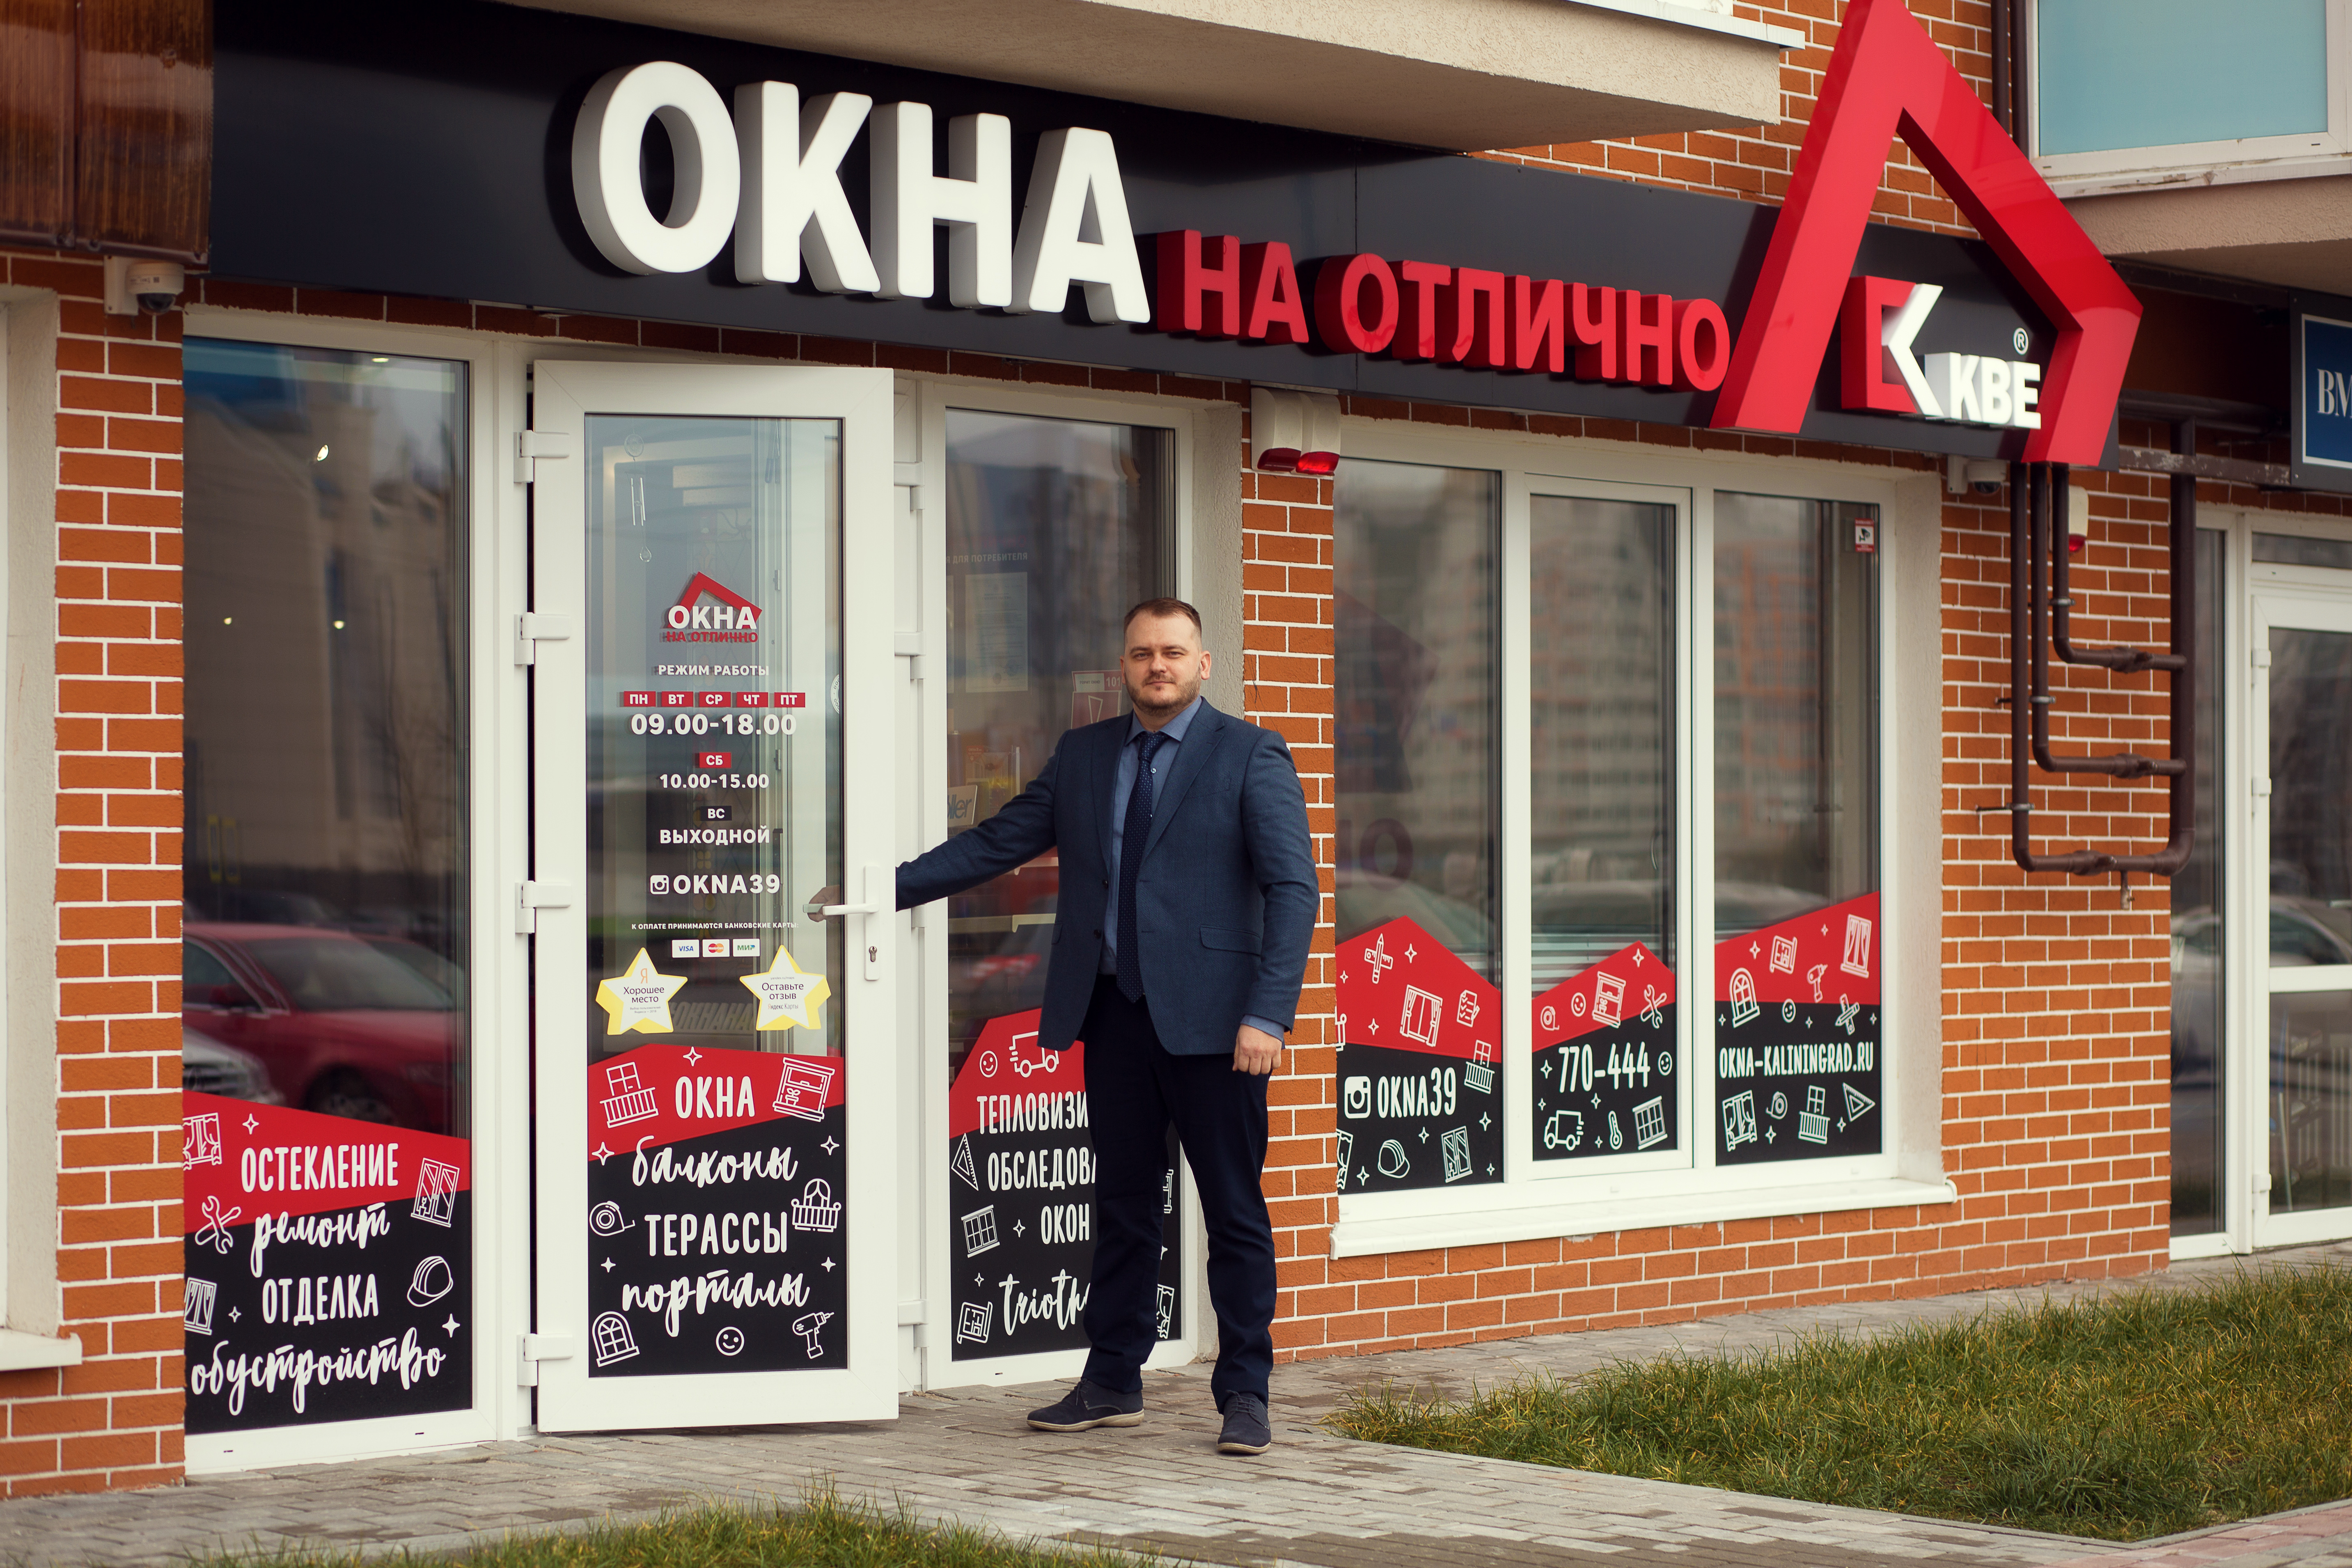 Офис продаж окон KBE от компании "ОКНА на Отлично" на Сельме в Калининграде